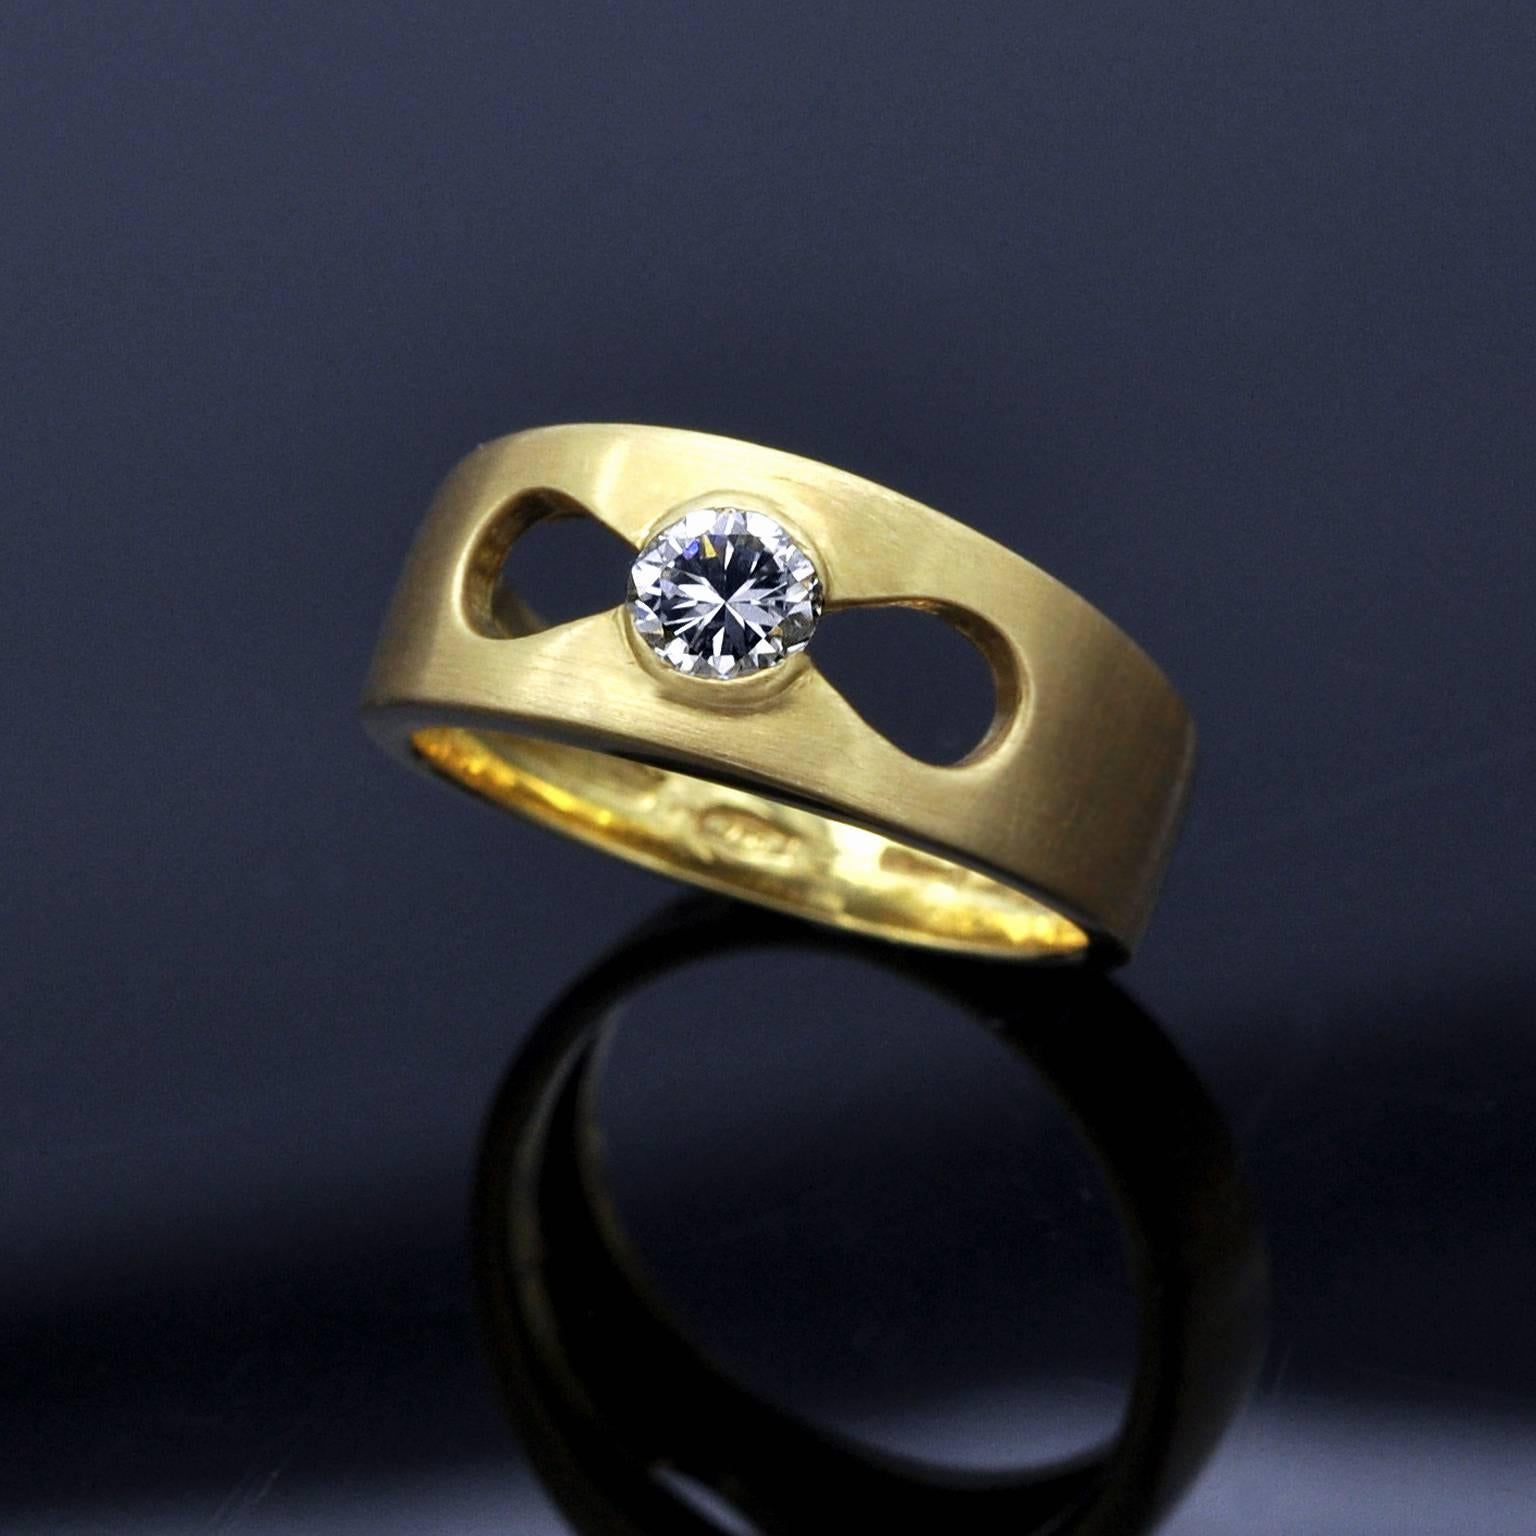 Bague solitaire moderne et élégante : il s'agit d'un anneau en or jaune brossé 18 carats dont les côtés polis mettent en valeur  un diamant de 0,35 carat (F G VS2)  dans une ouverture gracieusement conçue . 
Poids : 6.65 grammes